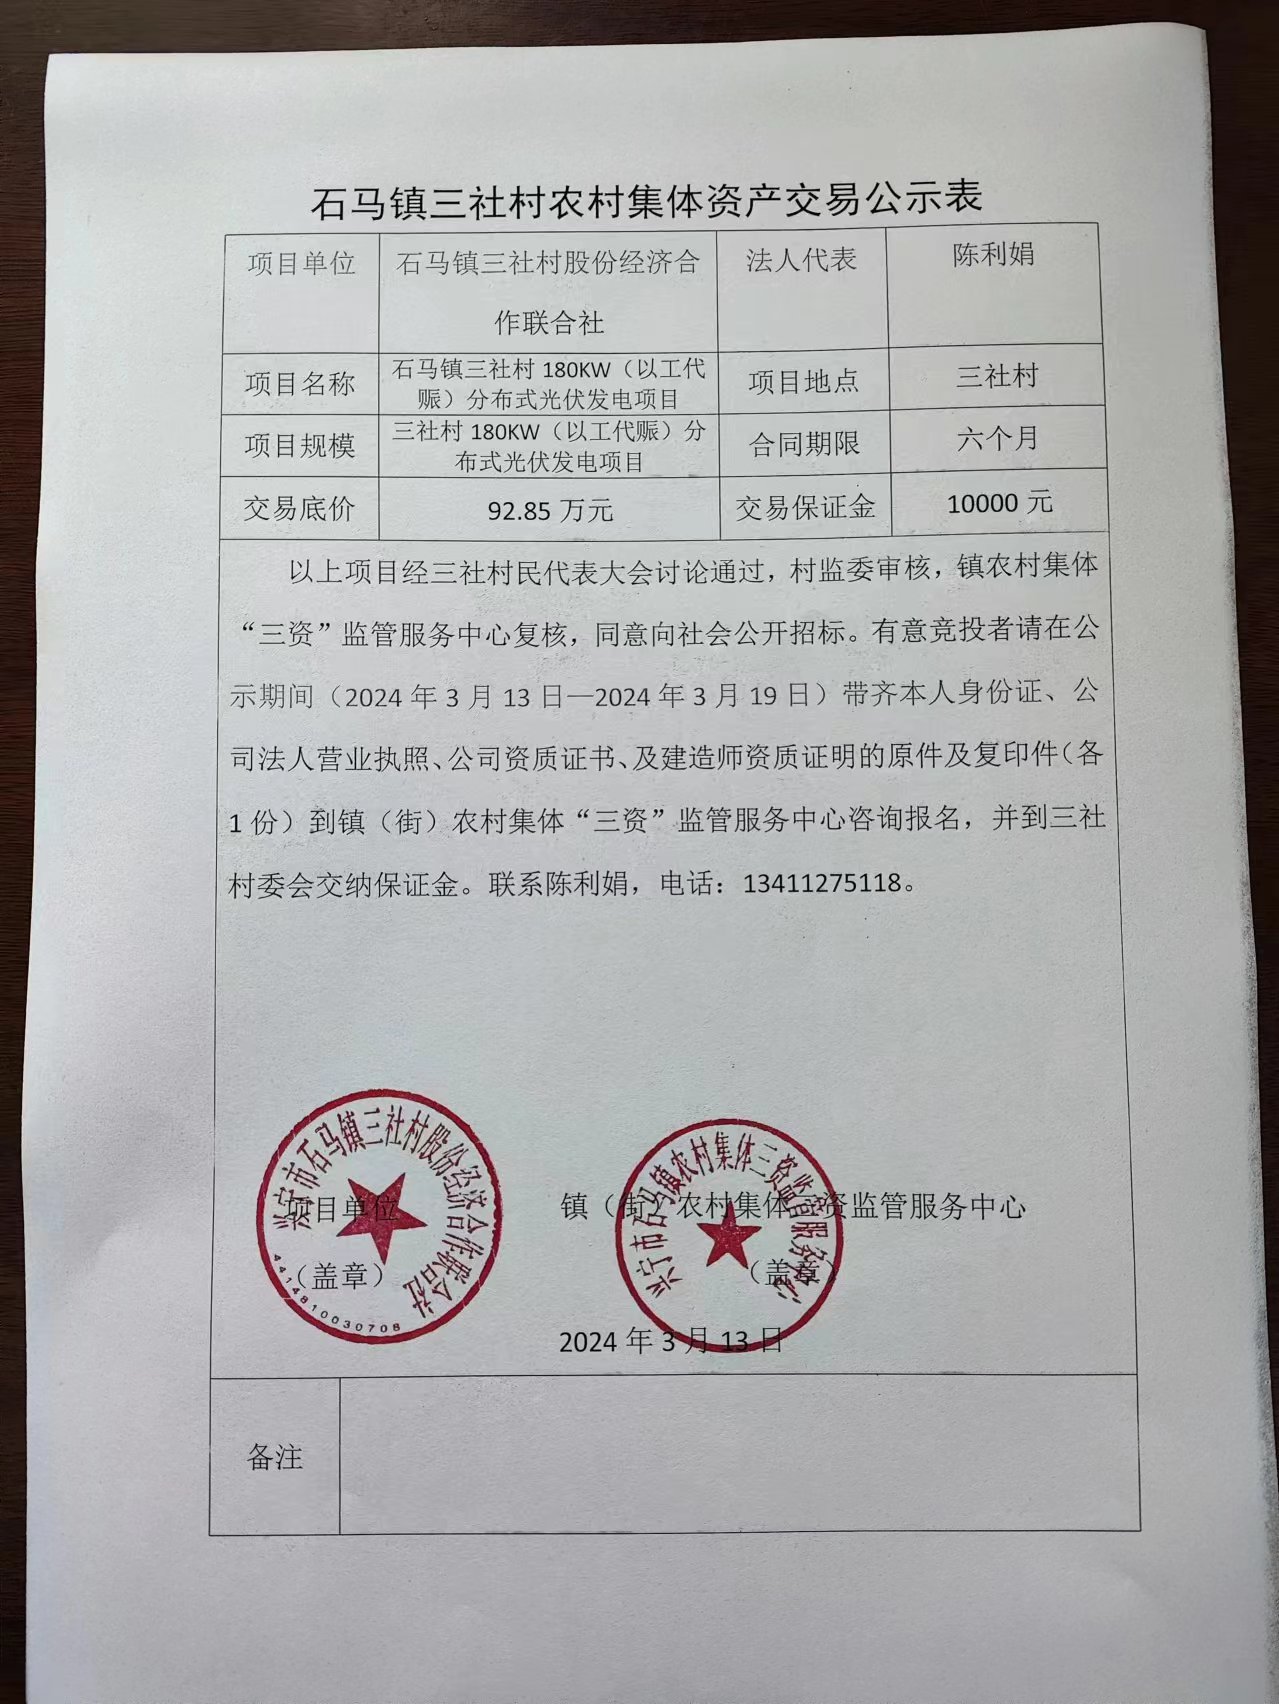 石马镇三社村农村集体资产交易公示表2024.3.13.jpg